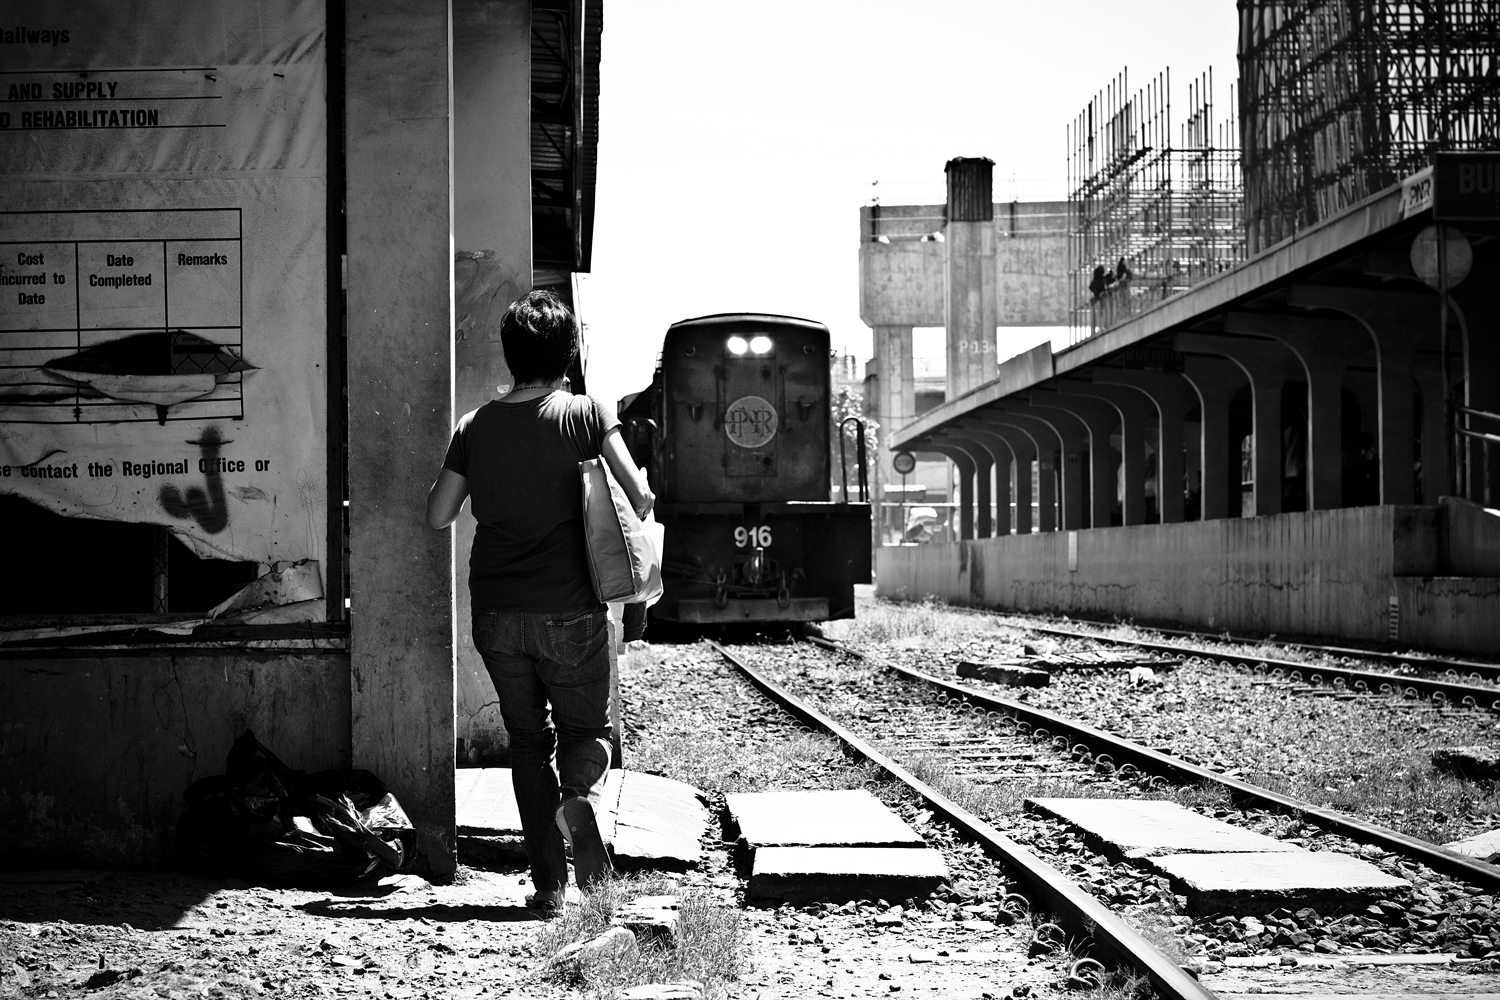 www.im-in-manila.jimdo.com - PNR Train